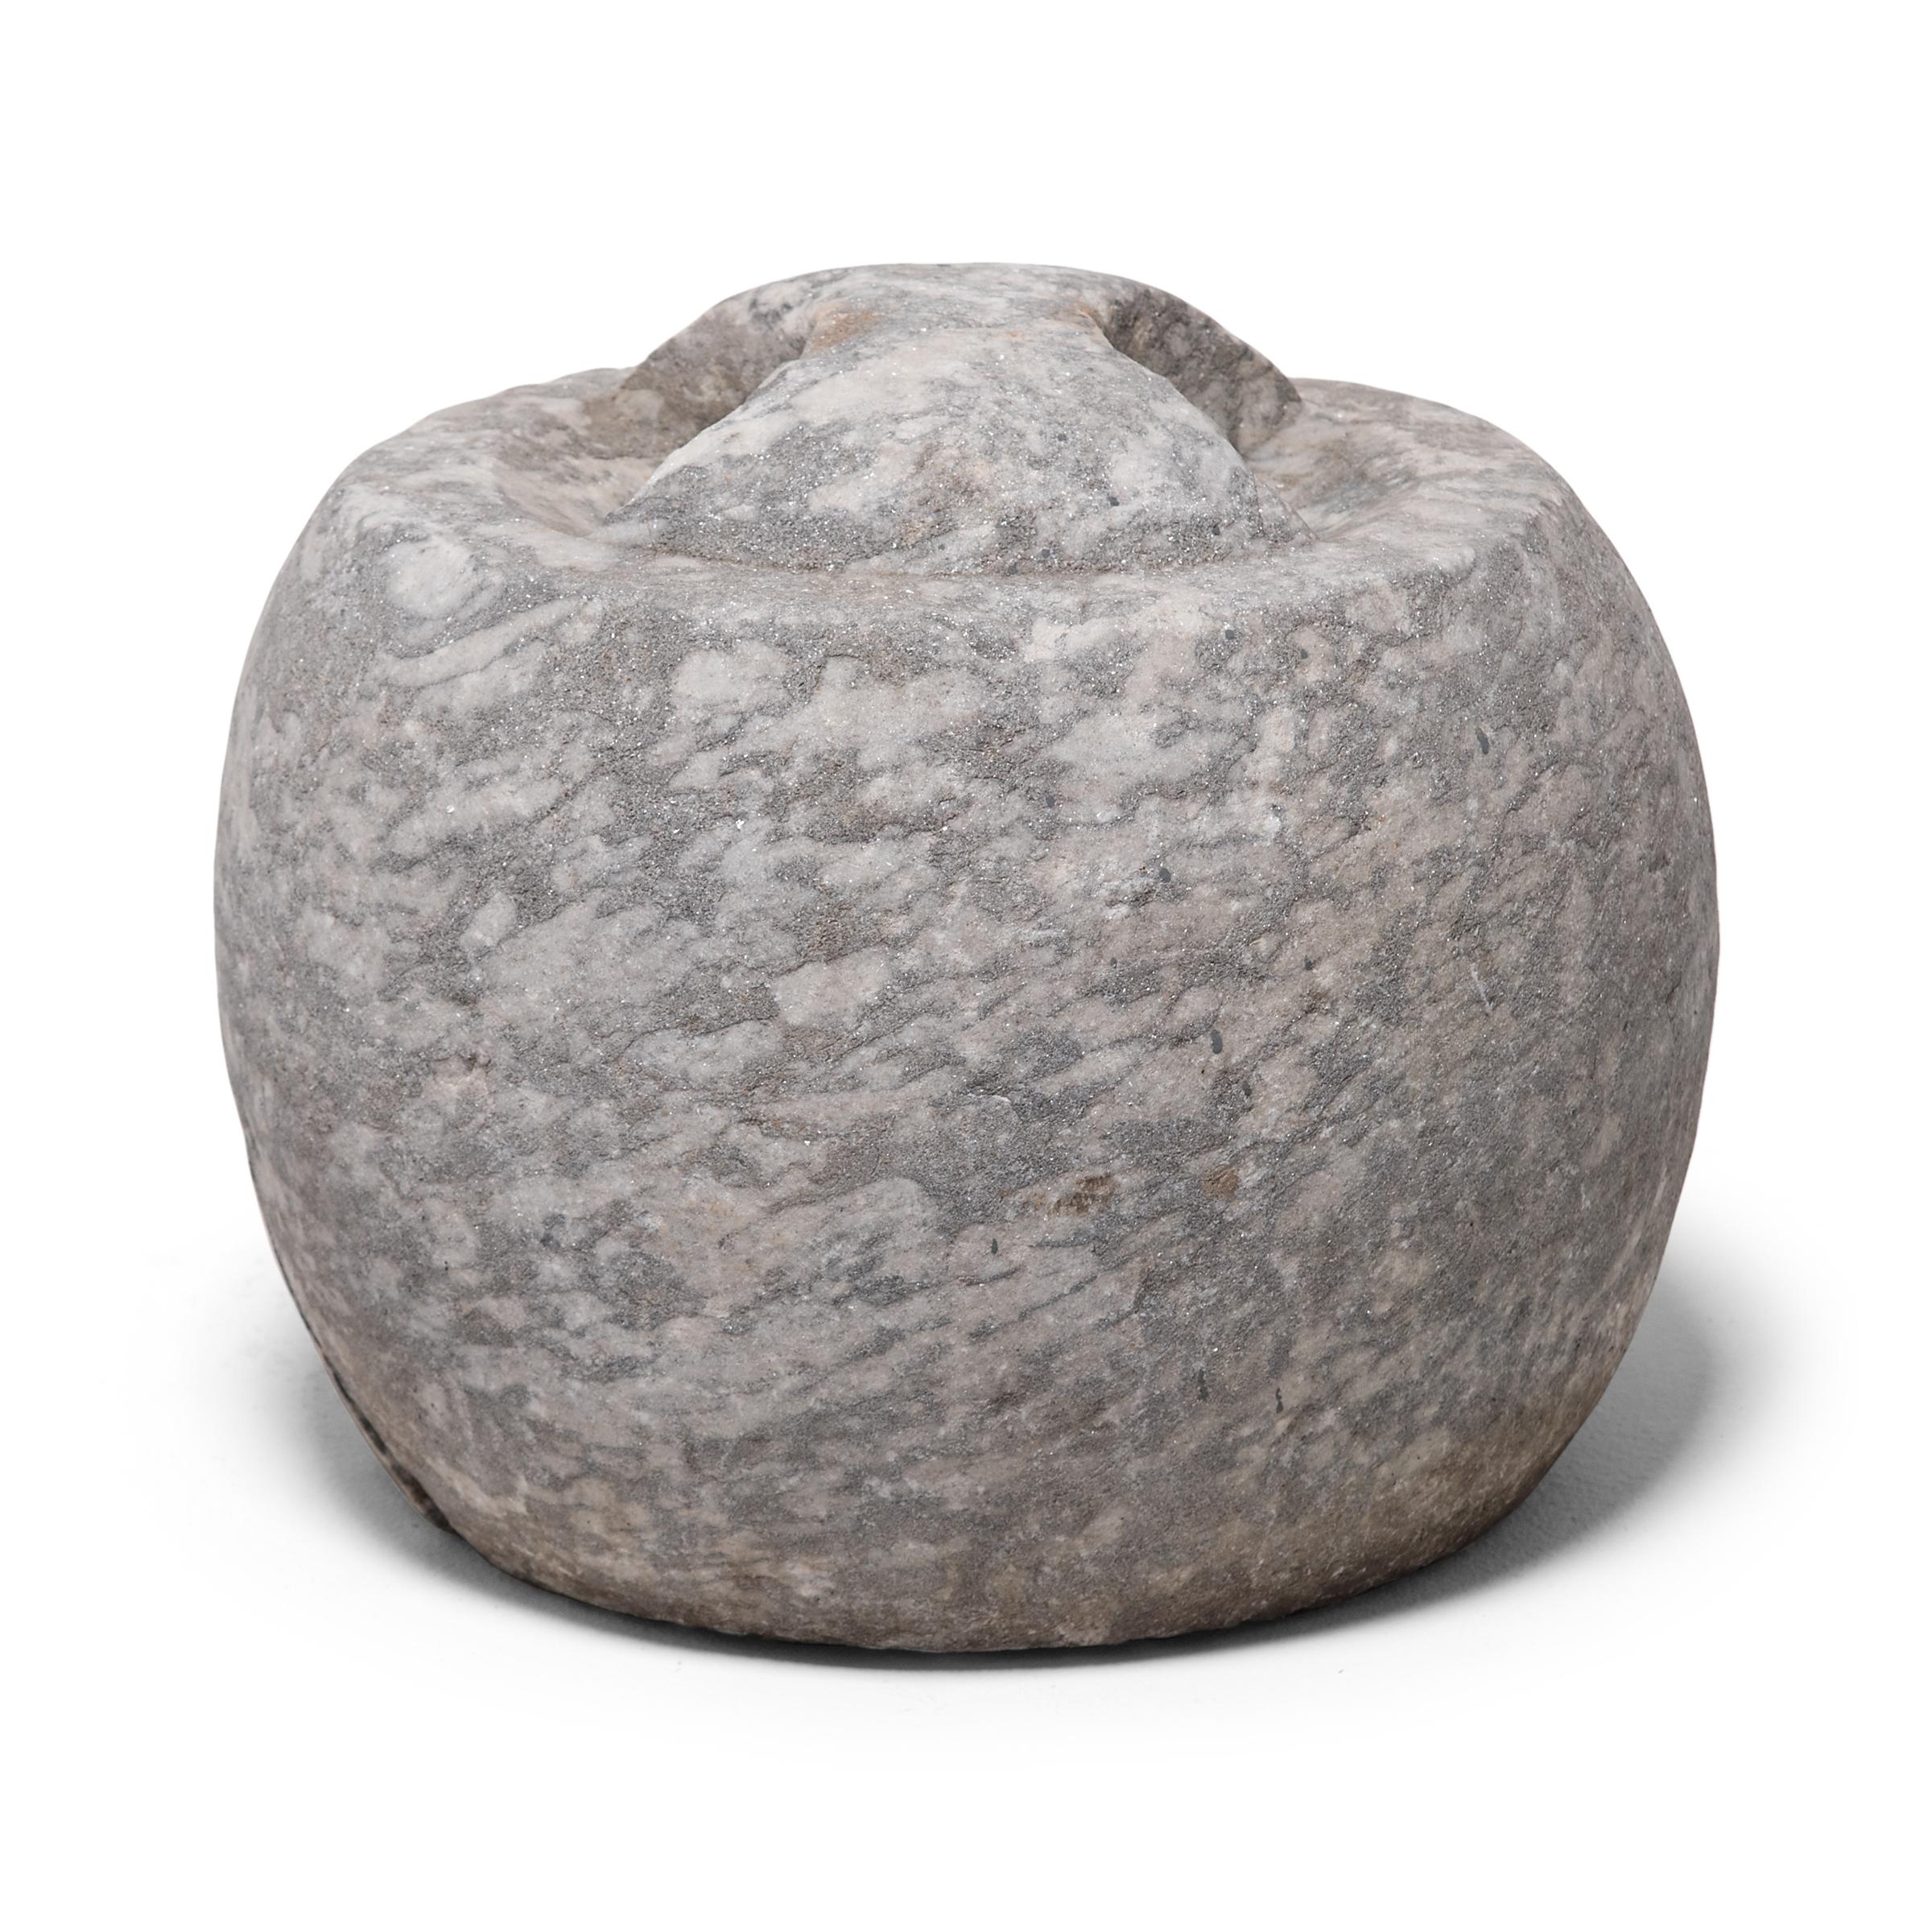 Contrairement à de nombreux objets de ce type, cette pierre d'attelage en calcaire a été sculptée dans une simple forme arrondie sans aucune référence figurative. Utilisée pour attacher un cheval par une corde ou des rênes, cette pierre aurait été